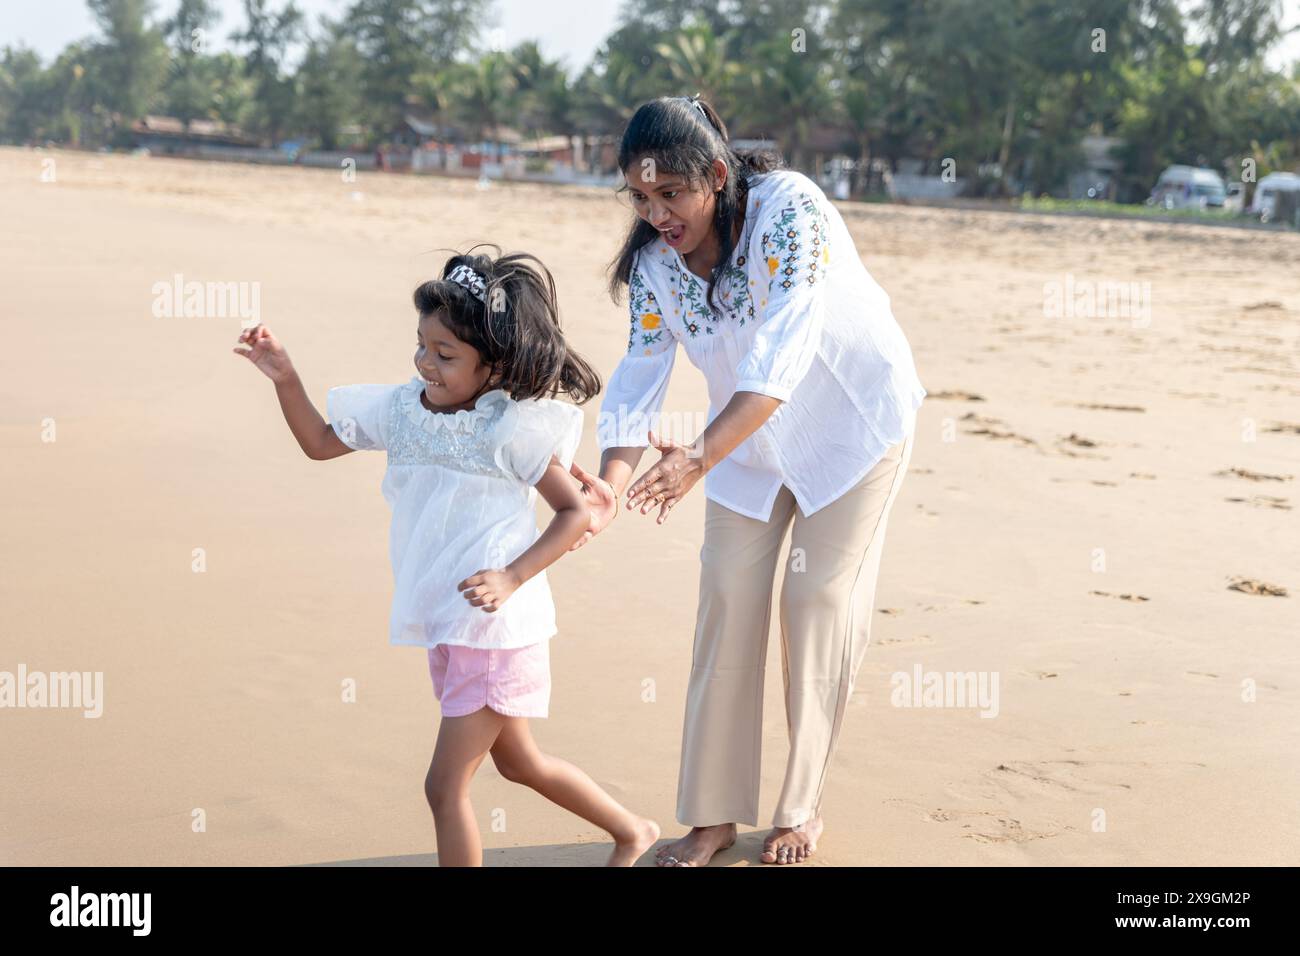 Un momento sereno in riva al mare: Una madre e sua figlia camminano mano nella mano sulla spiaggia baciata dal sole. Foto Stock